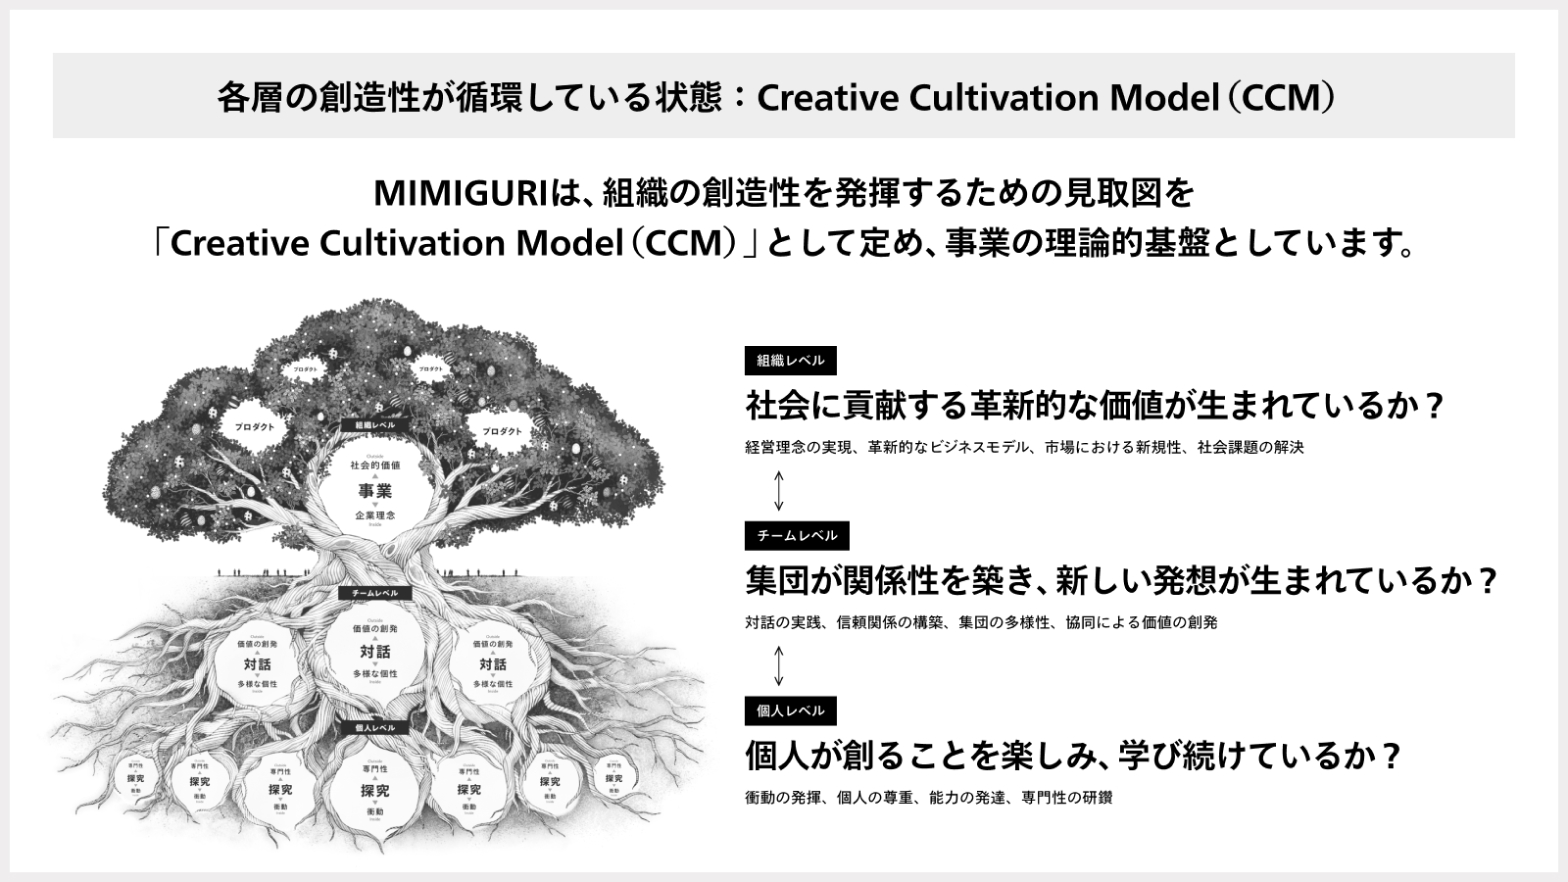 各層の創造性が循環している状態、Creative Cultivation Model（CCM）：MIMIGURIは、組織の創造性を発揮するための見取図を「Creative Cultivation Model（CCM）」として定め、事業の論理的基盤としています。 / 組織レベル：社会に貢献する革新的な価値が生まれているか？（経営理念の実現、革新的なビジネスモデル、市場における新規性、社会課題の解決） / チームレベル：集団が関係性を築き、新しい発想が生まれているか？（対話の実践、信頼関係の構築、集団の多様性、賛同による価値の創発） / 個人レベル：個人が創ることを楽しみ、学び続けているか？（衝動の発揮、個人の尊重、能力の発達、専門性の研鑽）